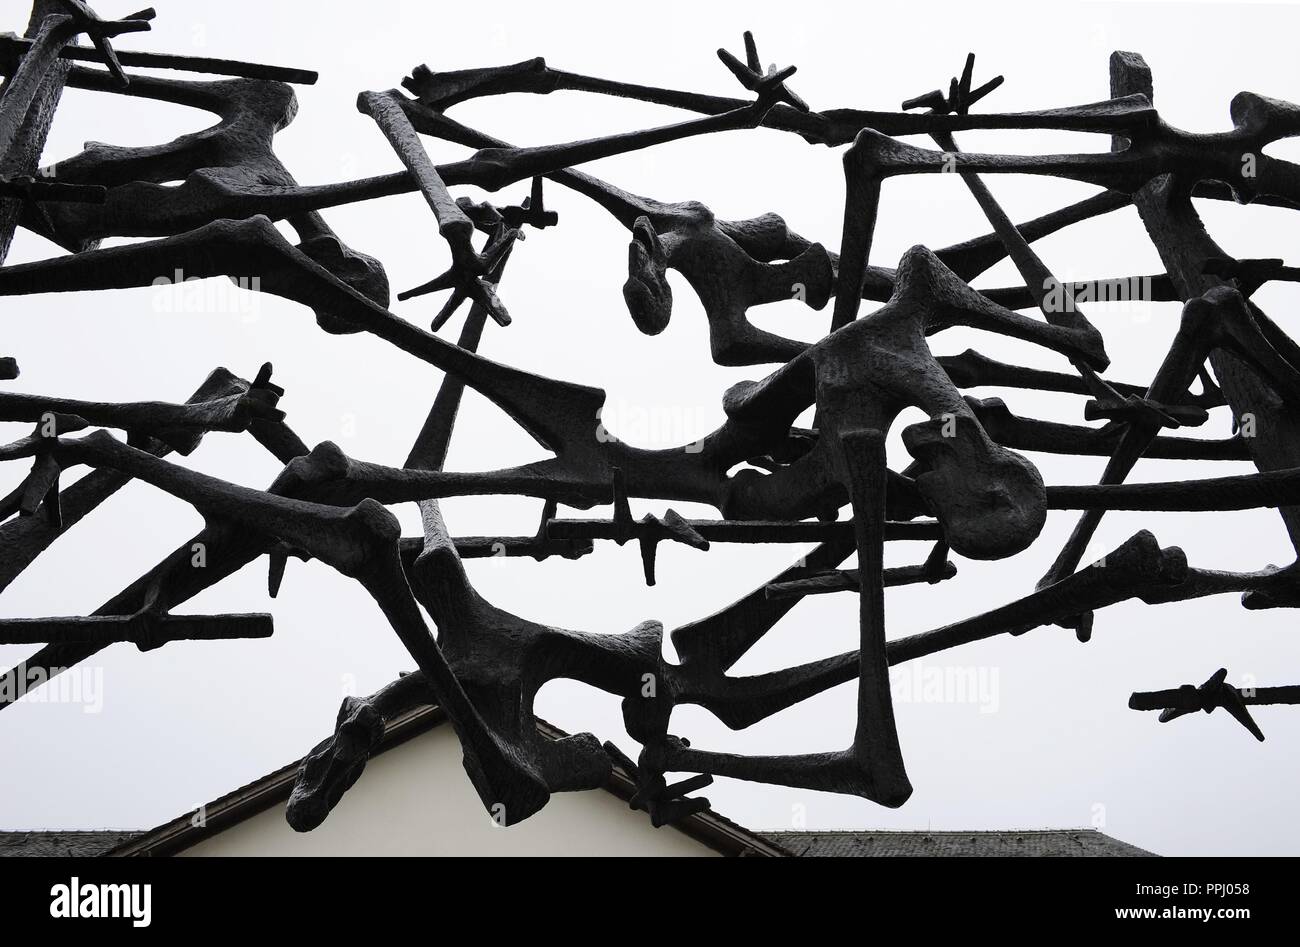 Camp de concentration de Dachau. Camp de prisonniers nazis a ouvert ses portes en 1933. Monument International de sculpture, 1968, par Nandor Glid (1924-1997). L'Allemagne. Banque D'Images